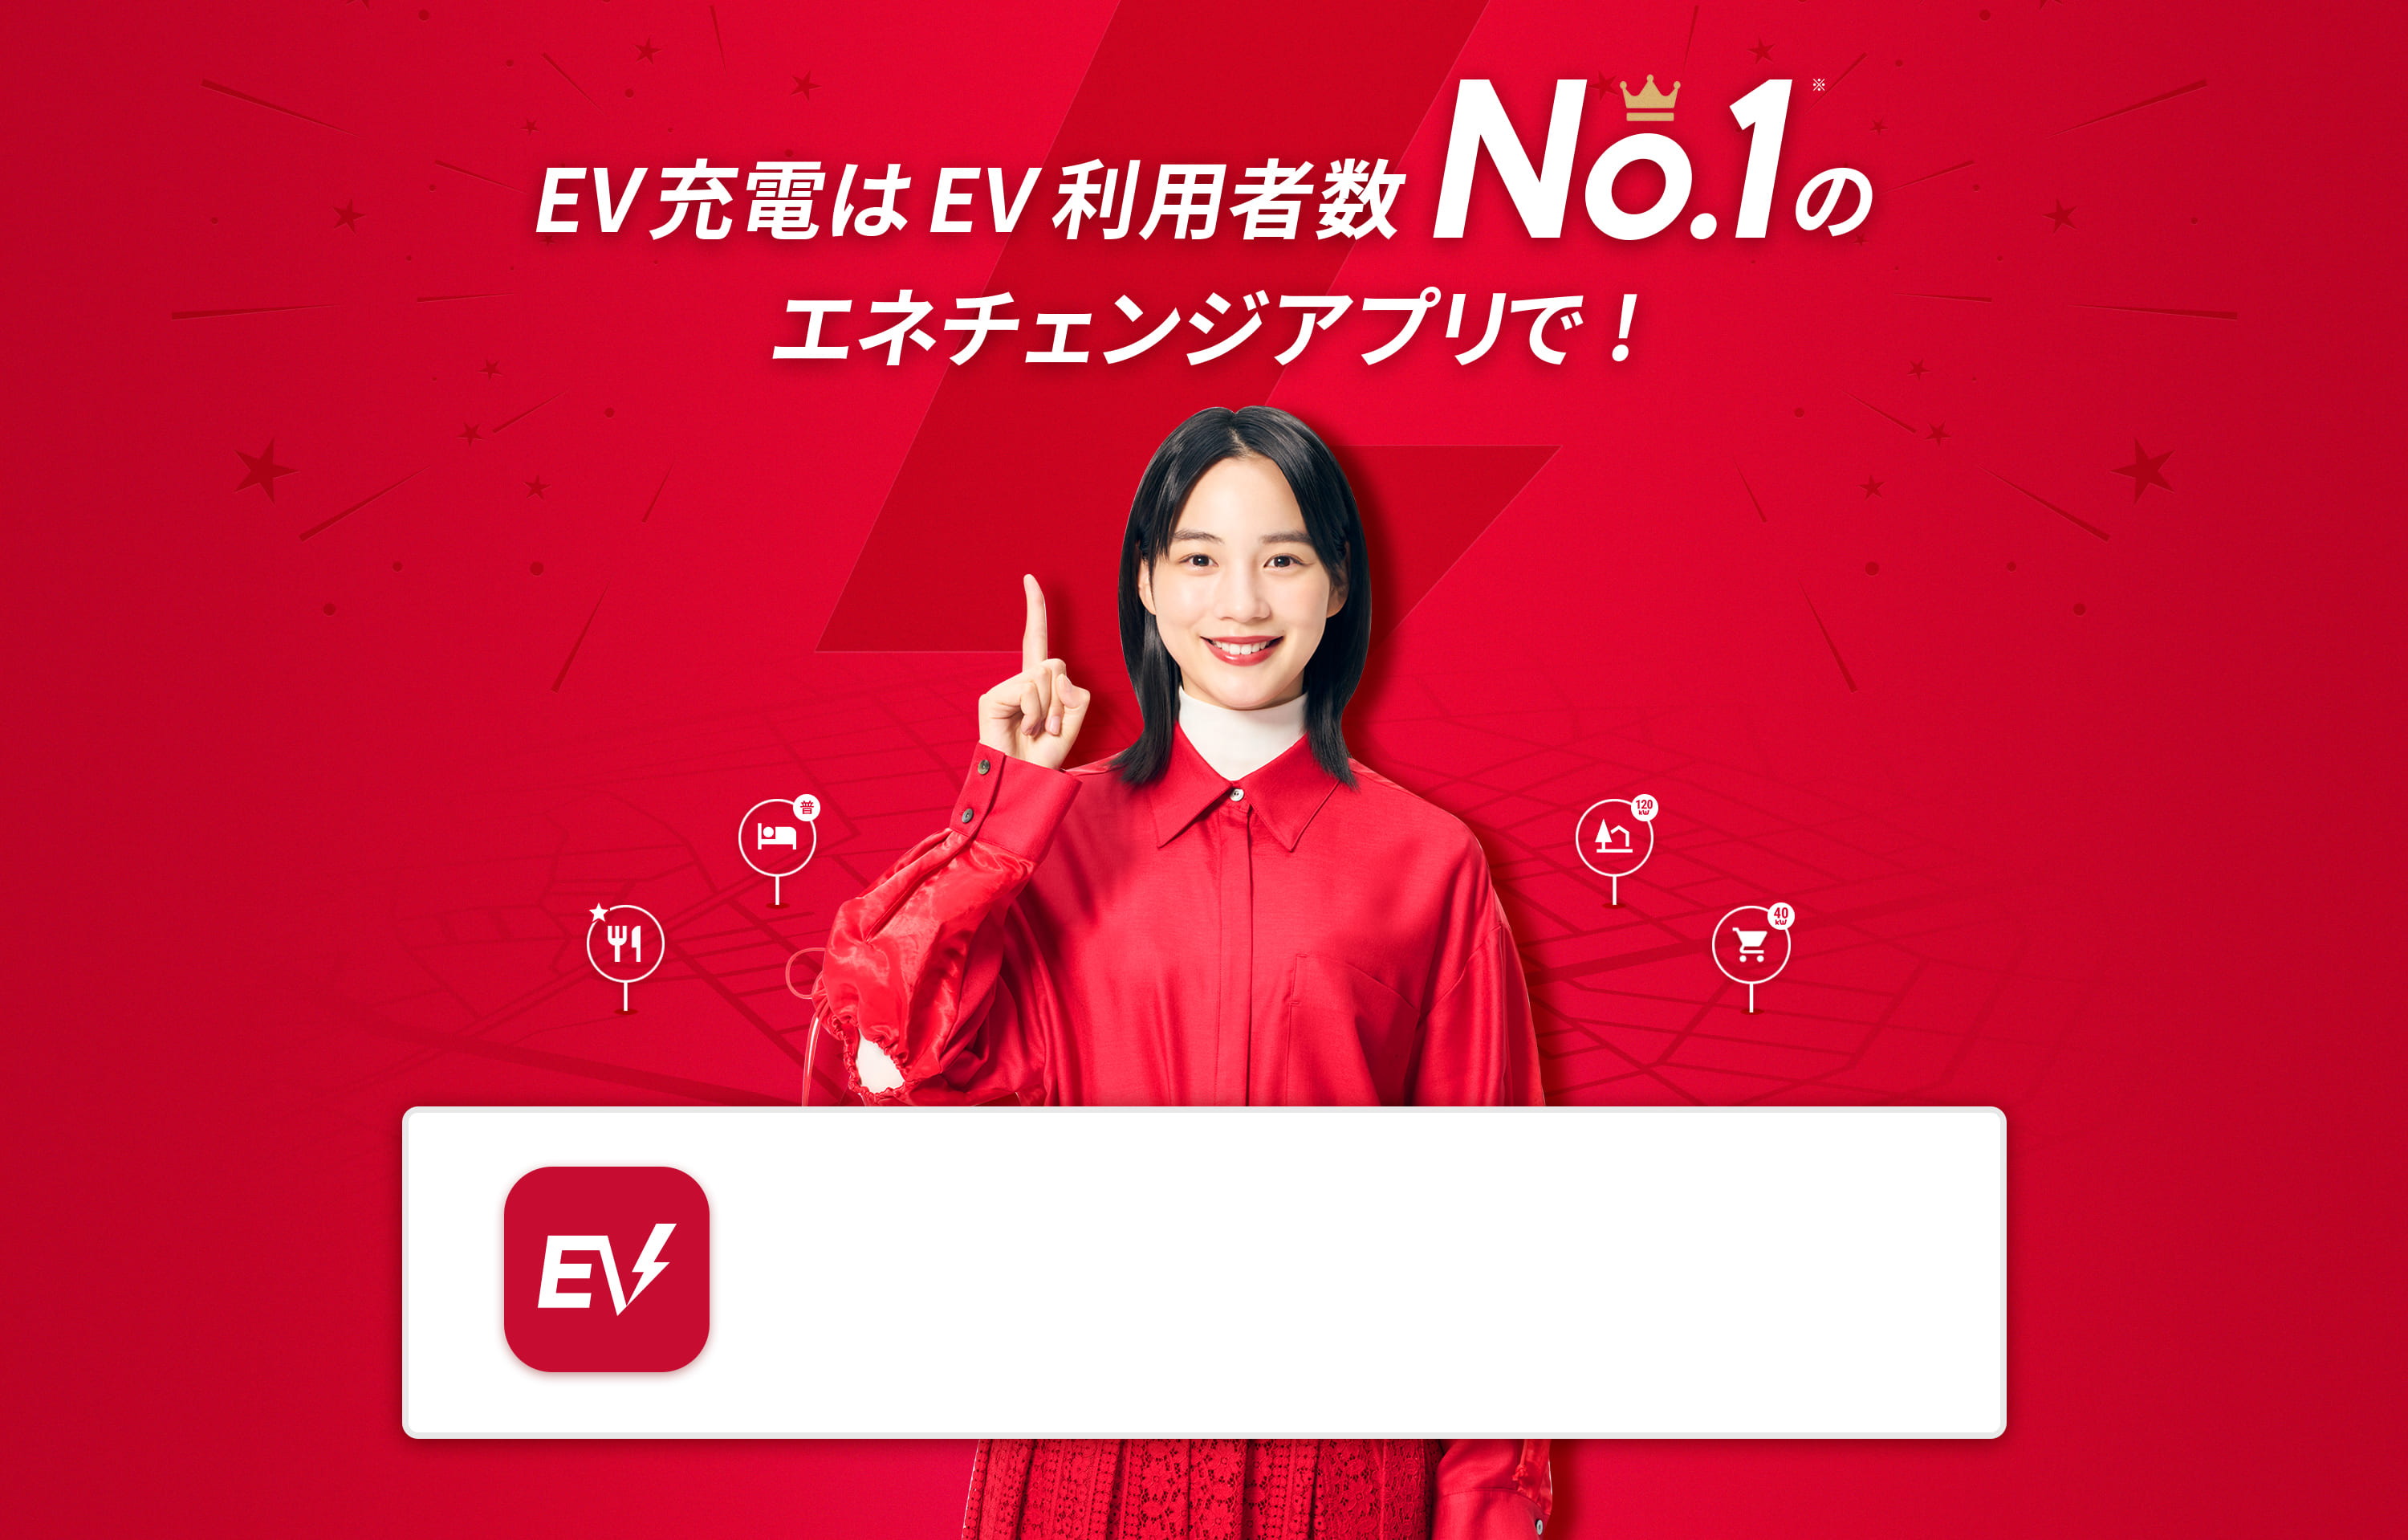 EV充電はEV利用者数No.1のエネチェンジアプリで!